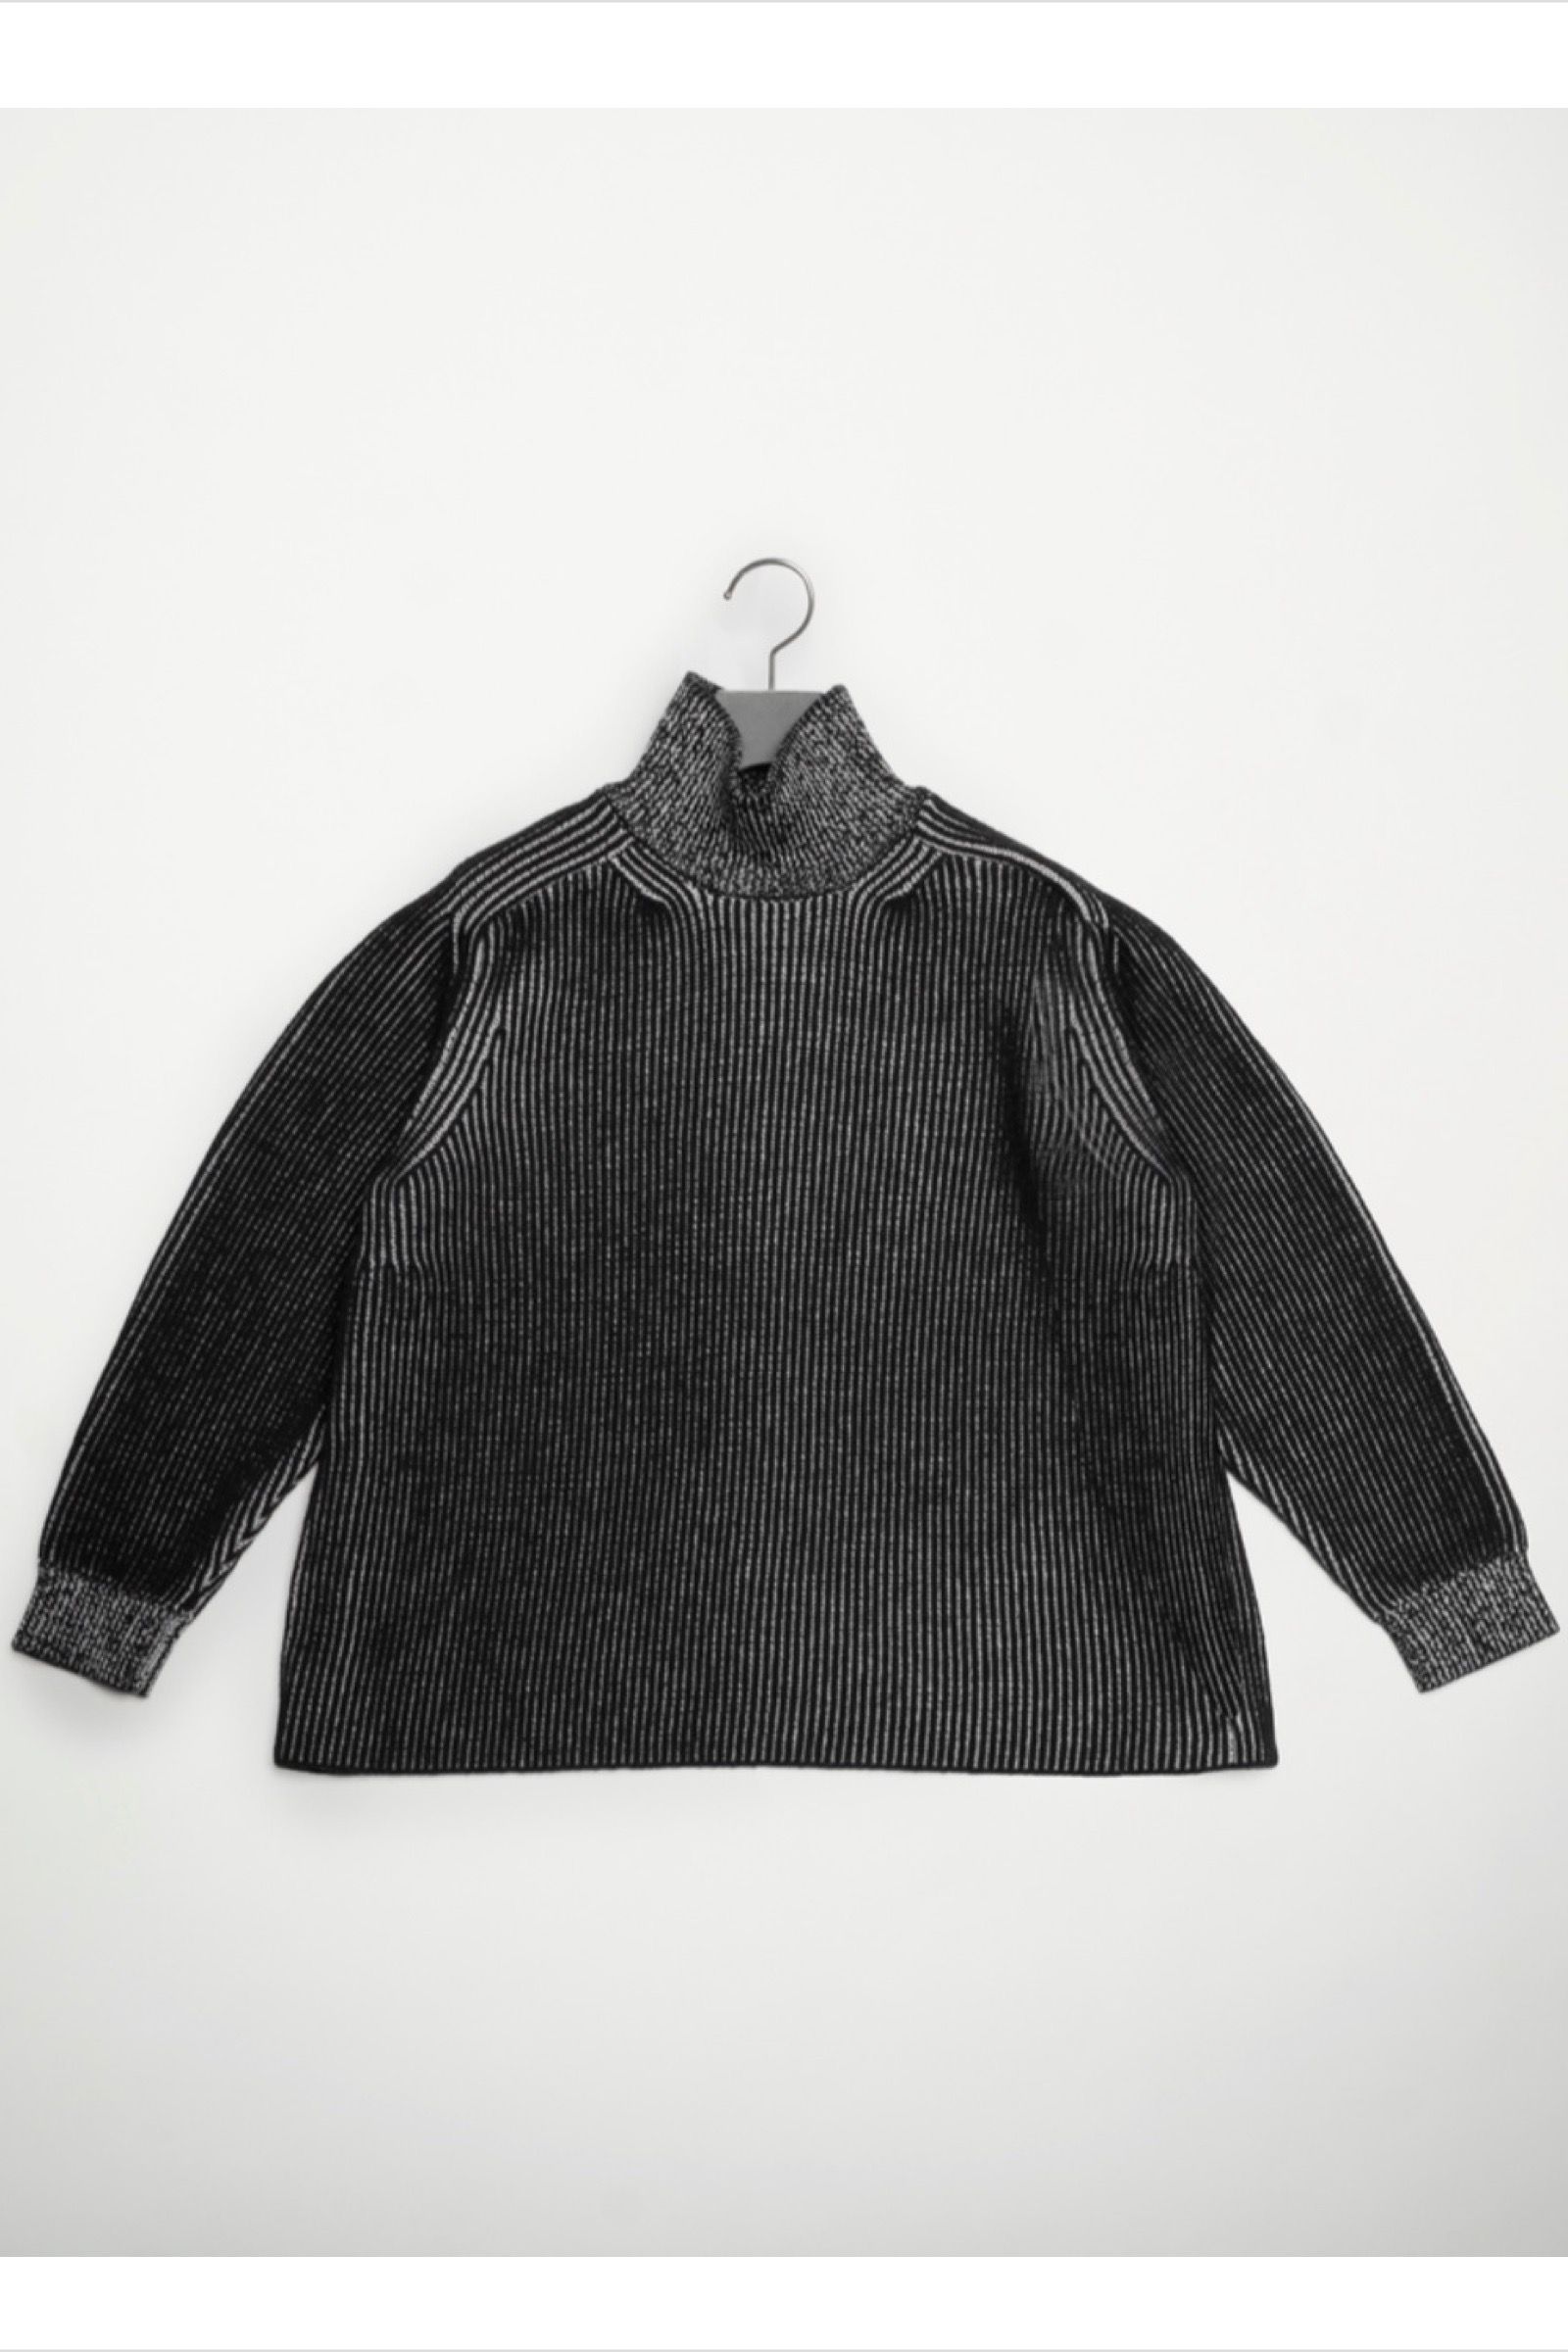 FUMITO GANRYU - ambient ribbed knit -grey×charcoal- 22aw 